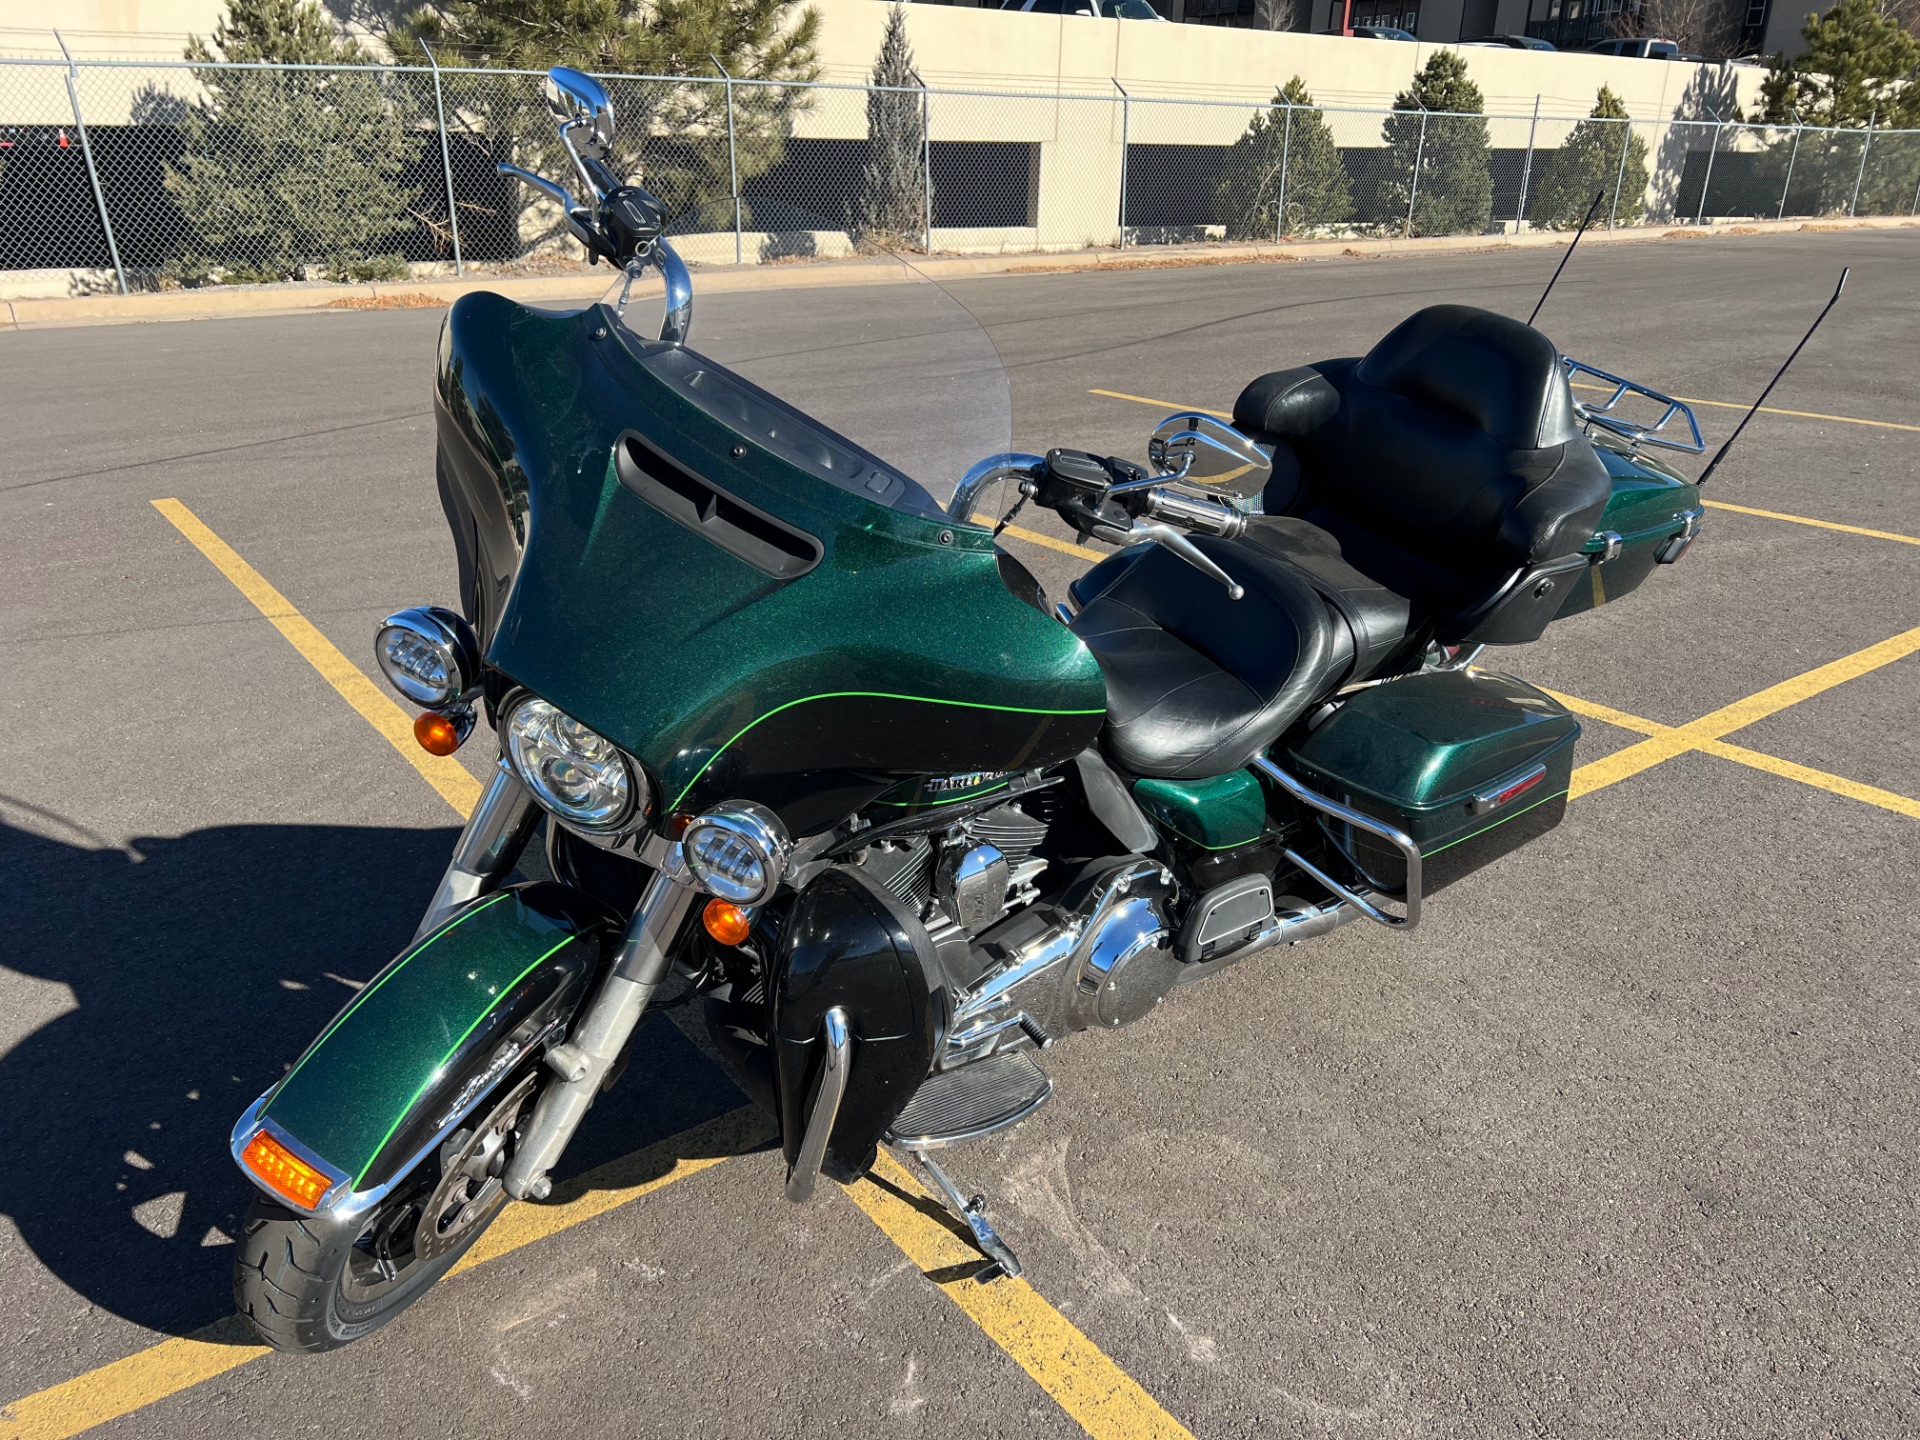 2015 Harley-Davidson Ultra Limited in Colorado Springs, Colorado - Photo 4